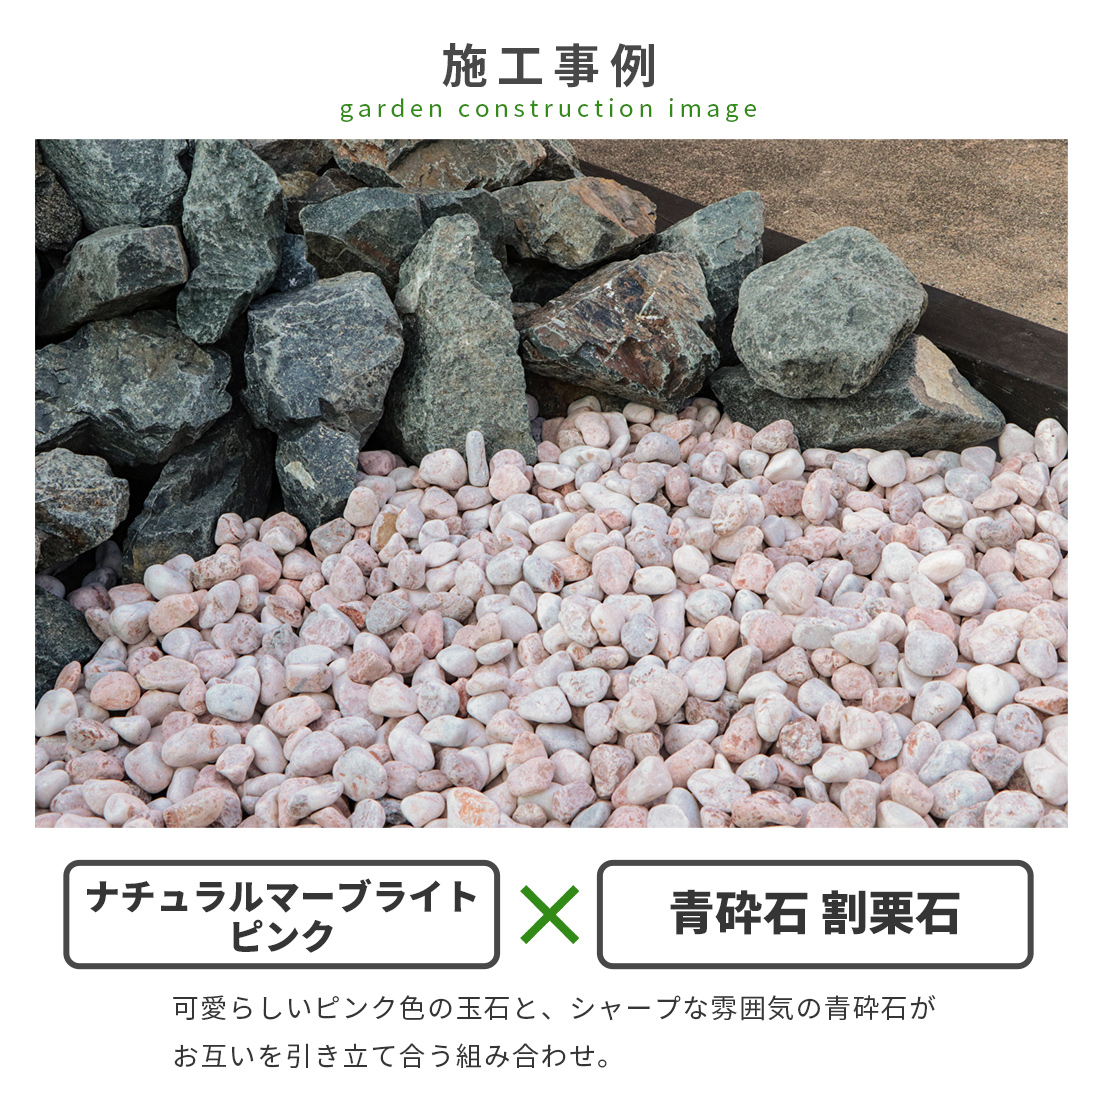 東海砂利 株式会社青砕石 5-13mm [6号砕石] 10kg 庭 砂利 おしゃれ